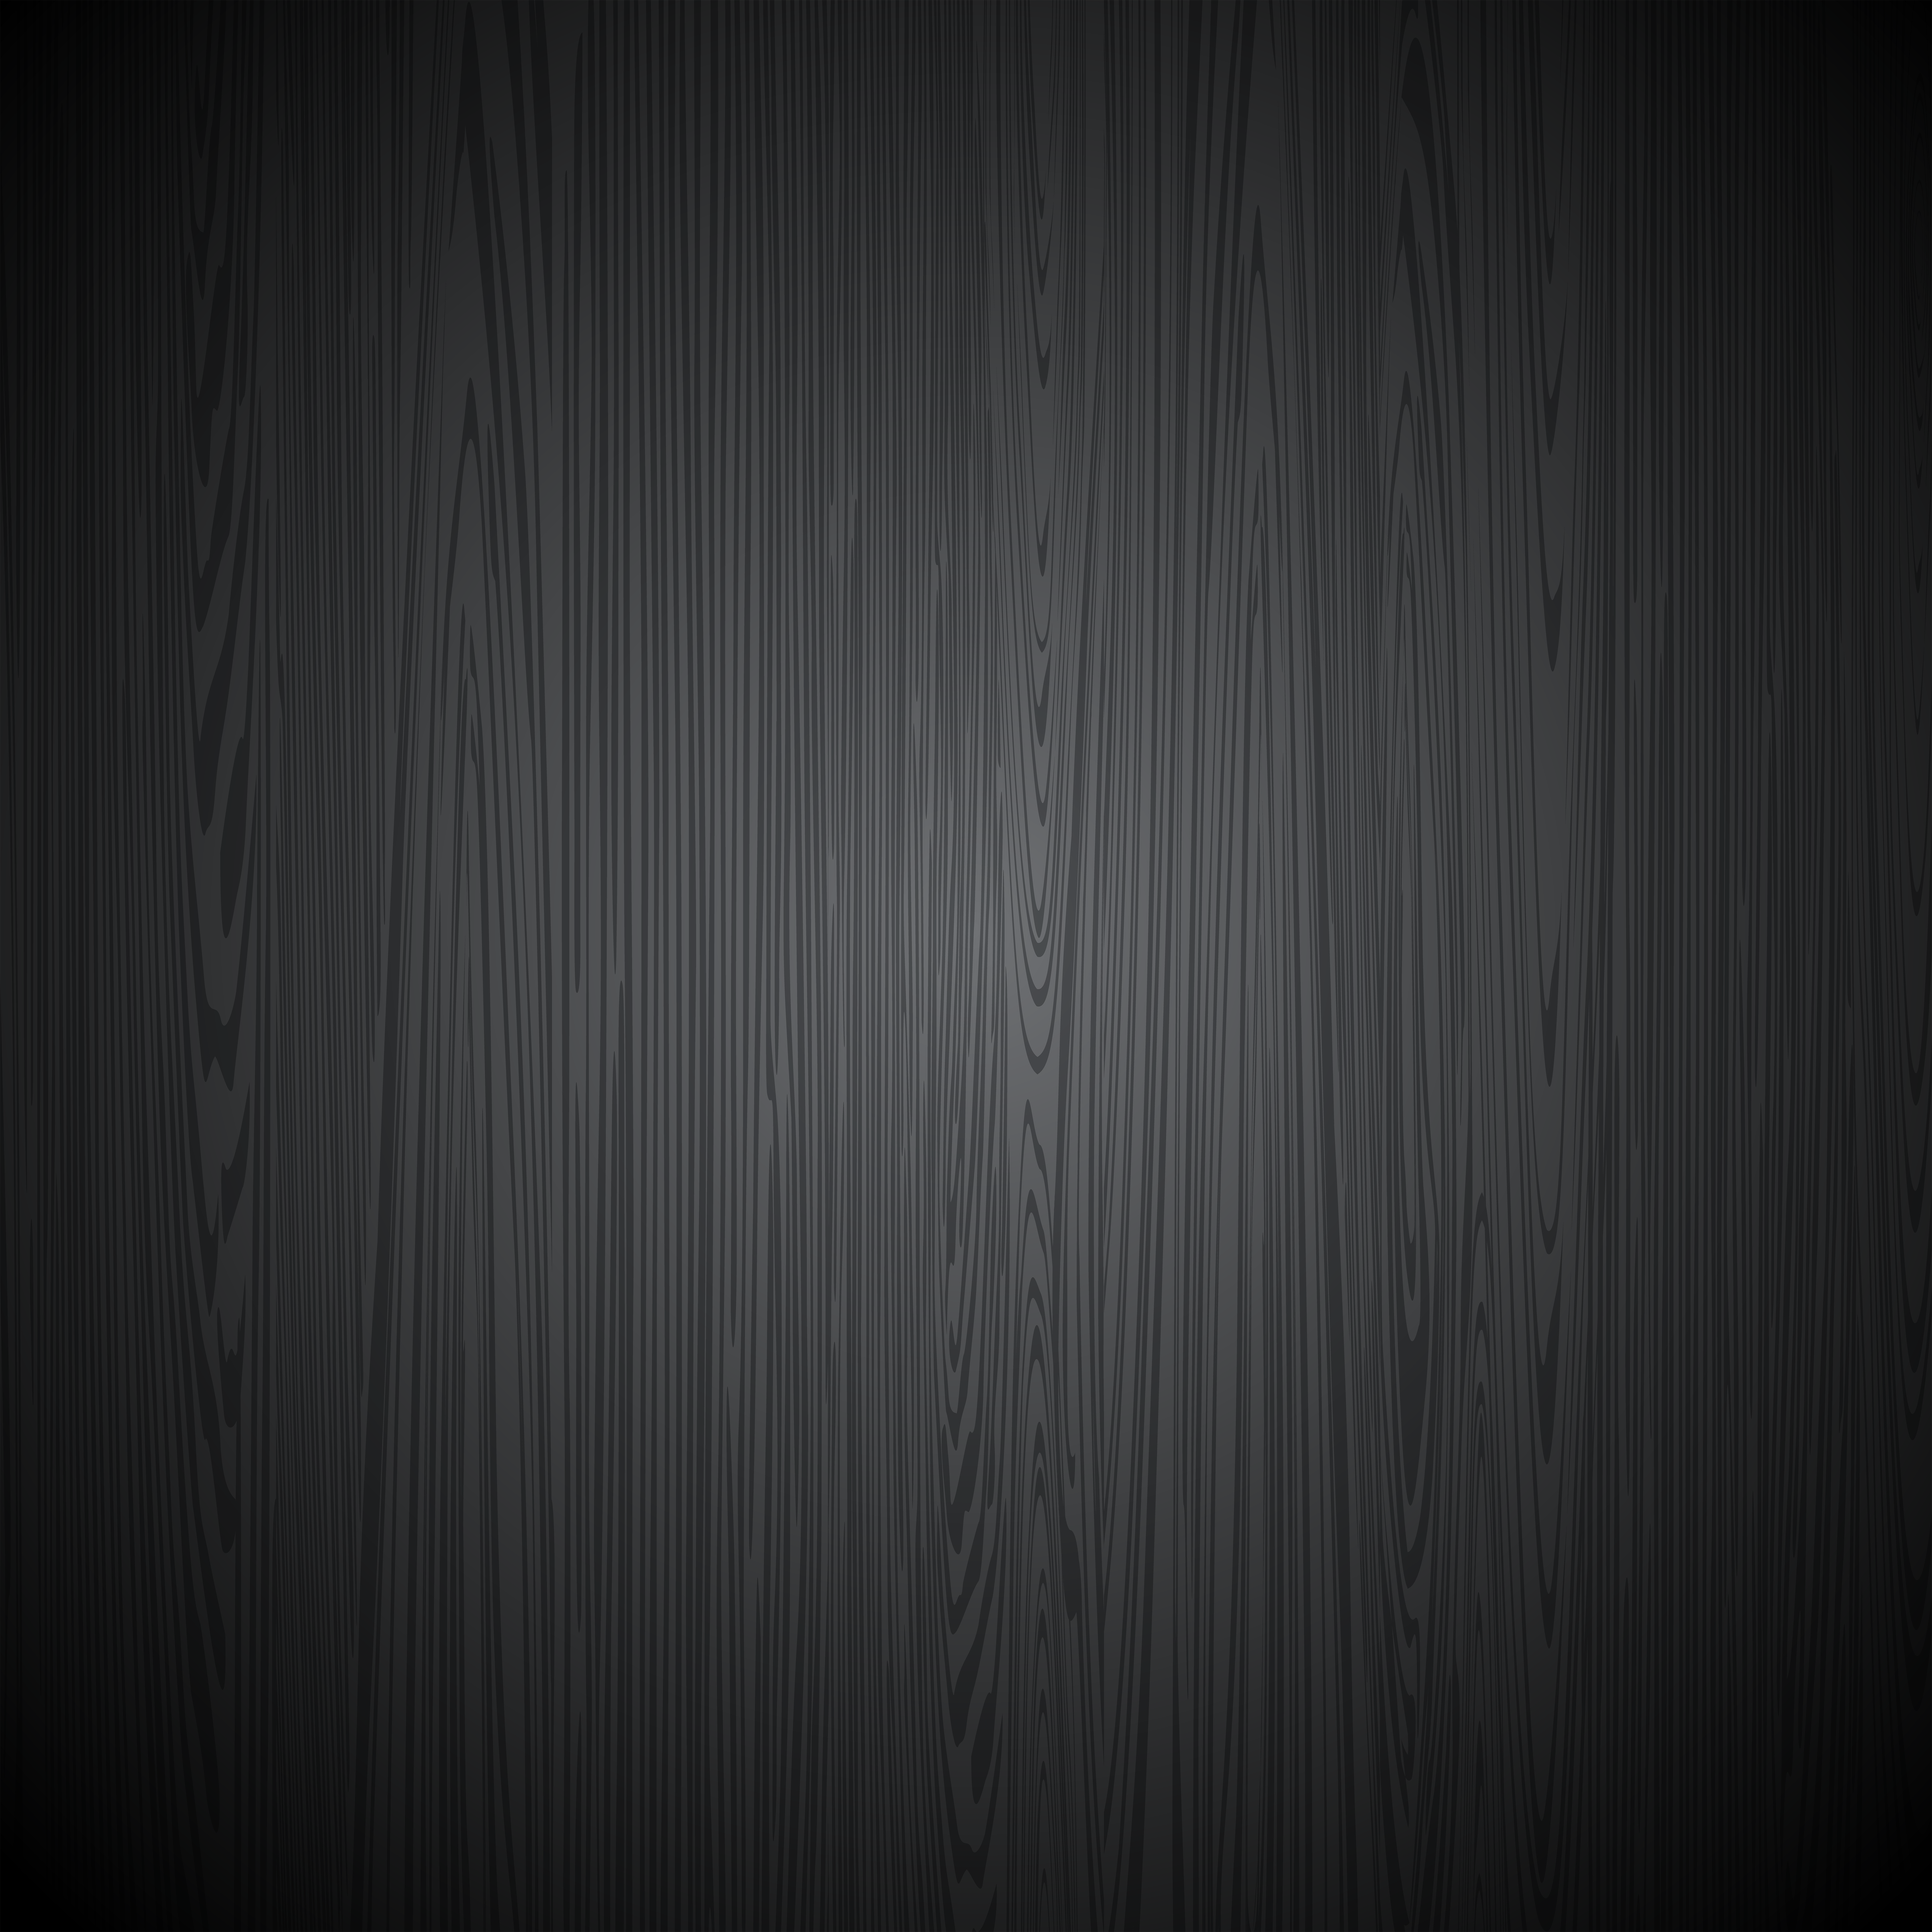 Hình nền gỗ đen đem lại sự sang trọng và tinh tế cho bất kỳ không gian nào. Kết hợp với các màu sắc đồng nhất hoặc tương phản, hình nền này làm nổi bật bất kỳ món đồ nào bạn muốn trưng bày. Hãy cùng xem hình ảnh để nhận ra sức hấp dẫn của hình nền gỗ đen. 